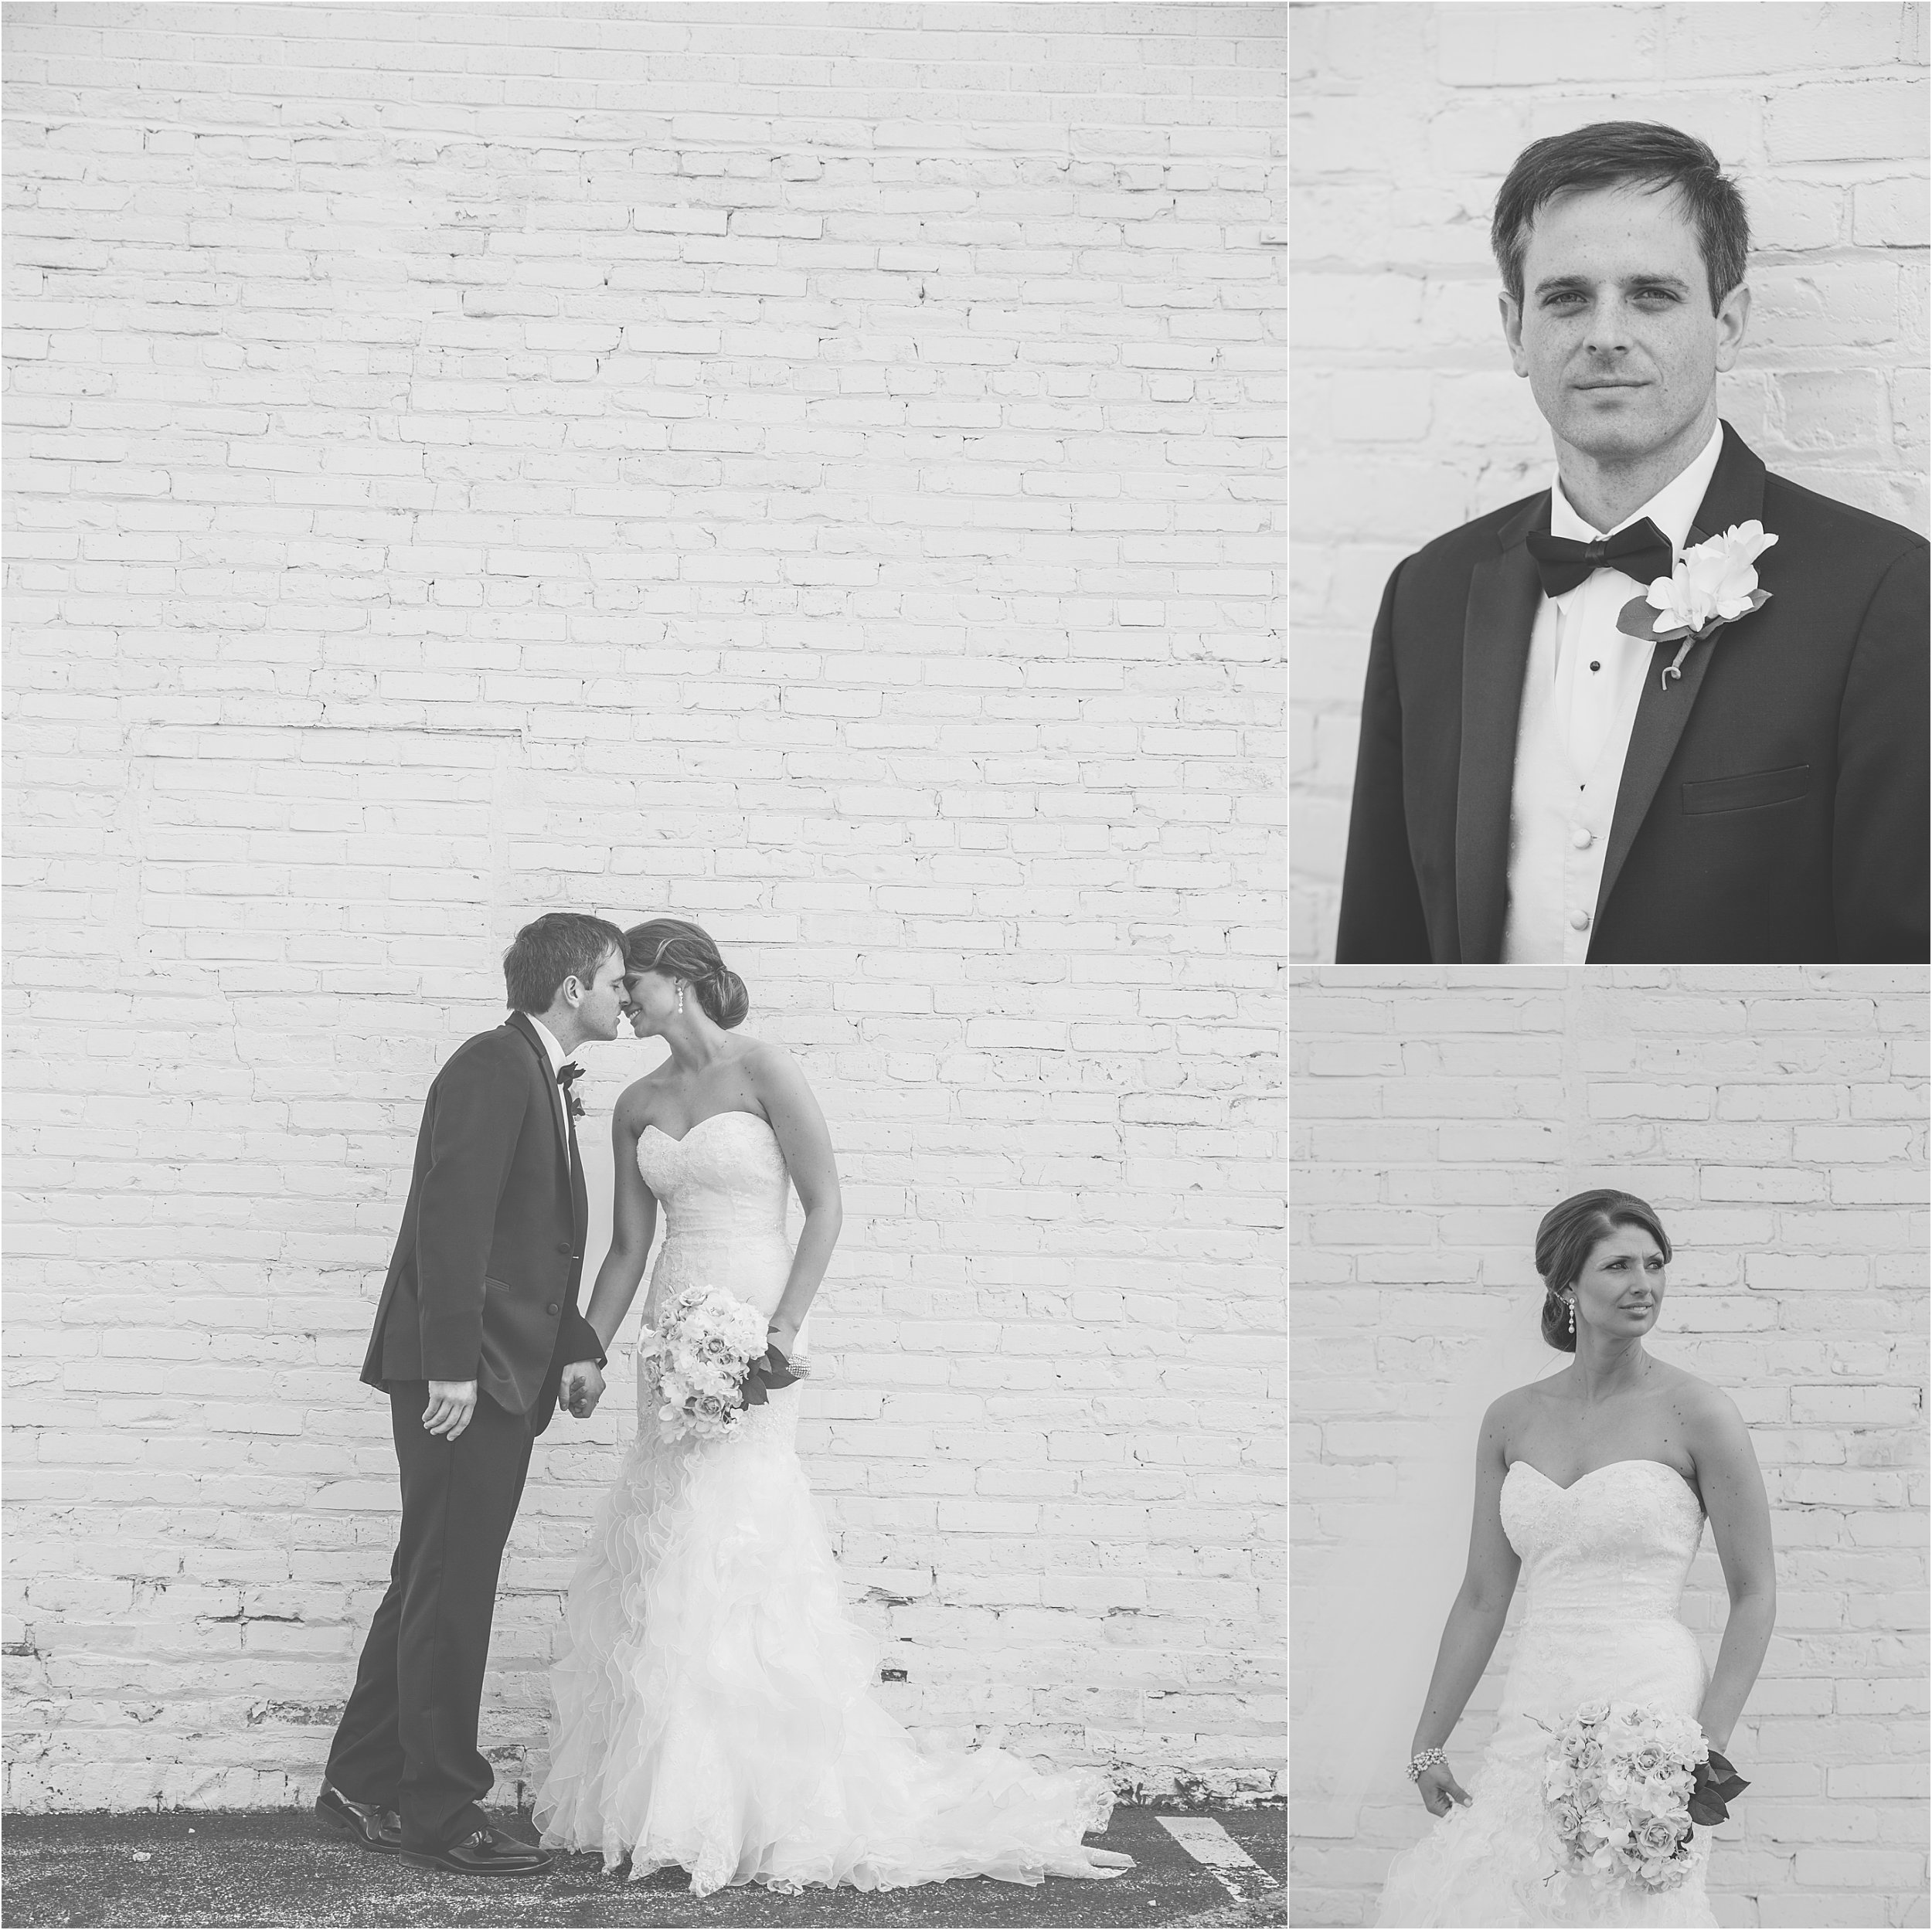 20-bride-groom-brick-wall-kissing.JPG